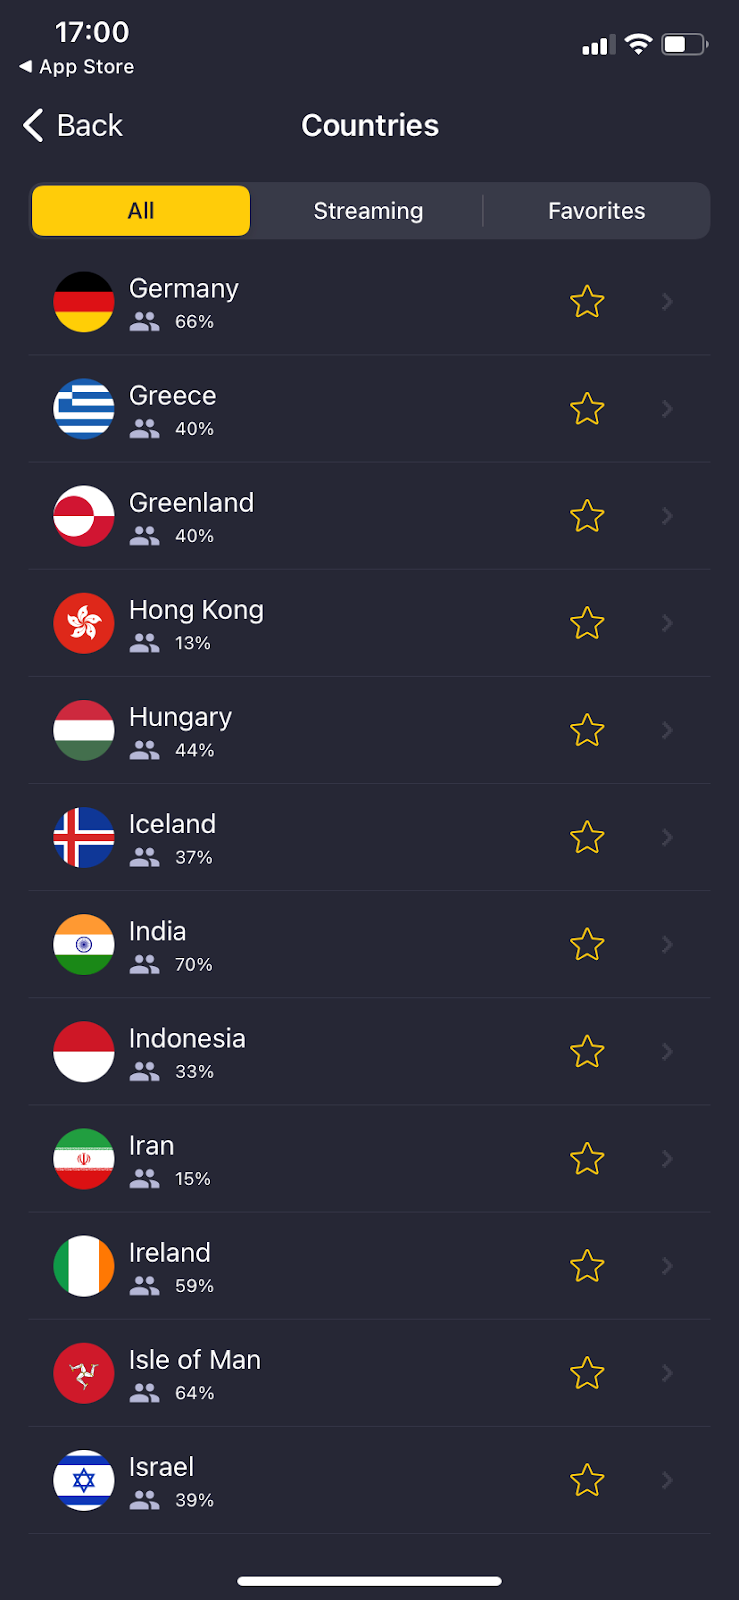  CyberGhost VPN iOS app showing all servers.